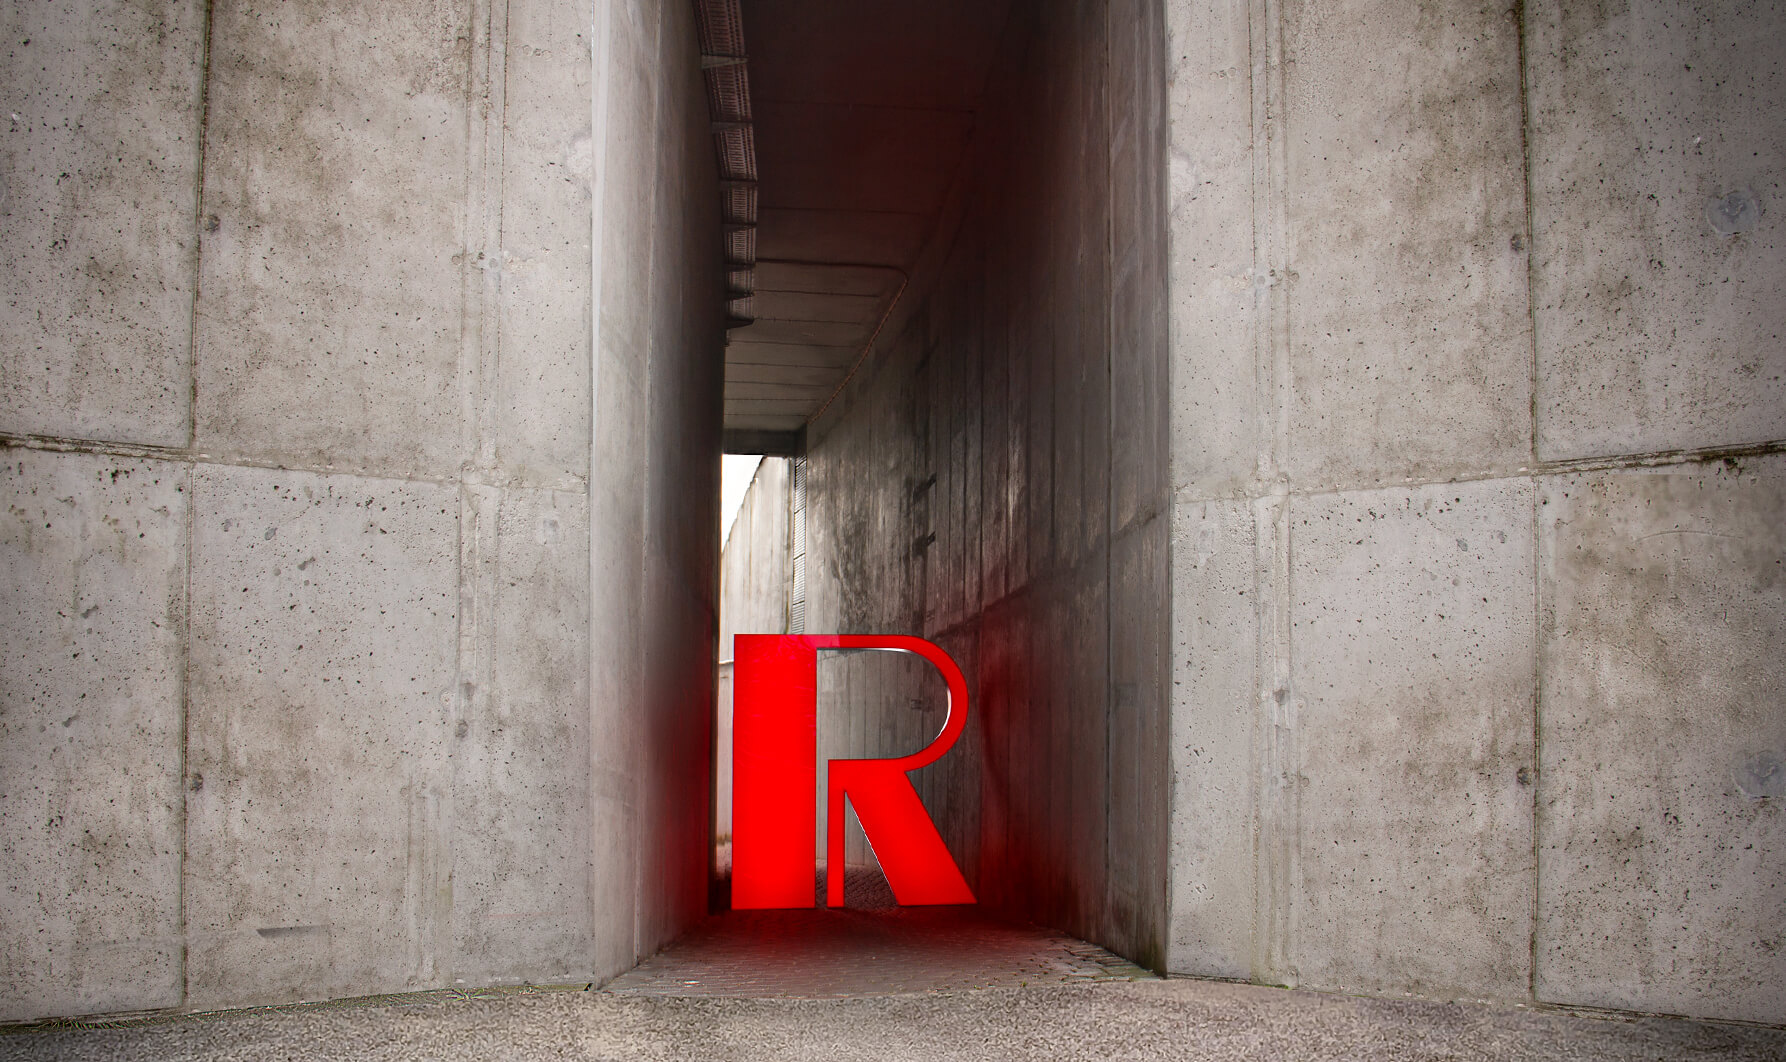 Roter Buchstabe R - Großformatiger Buchstabe R in Rot auf einer Betonwand, mit LED beleuchtet.